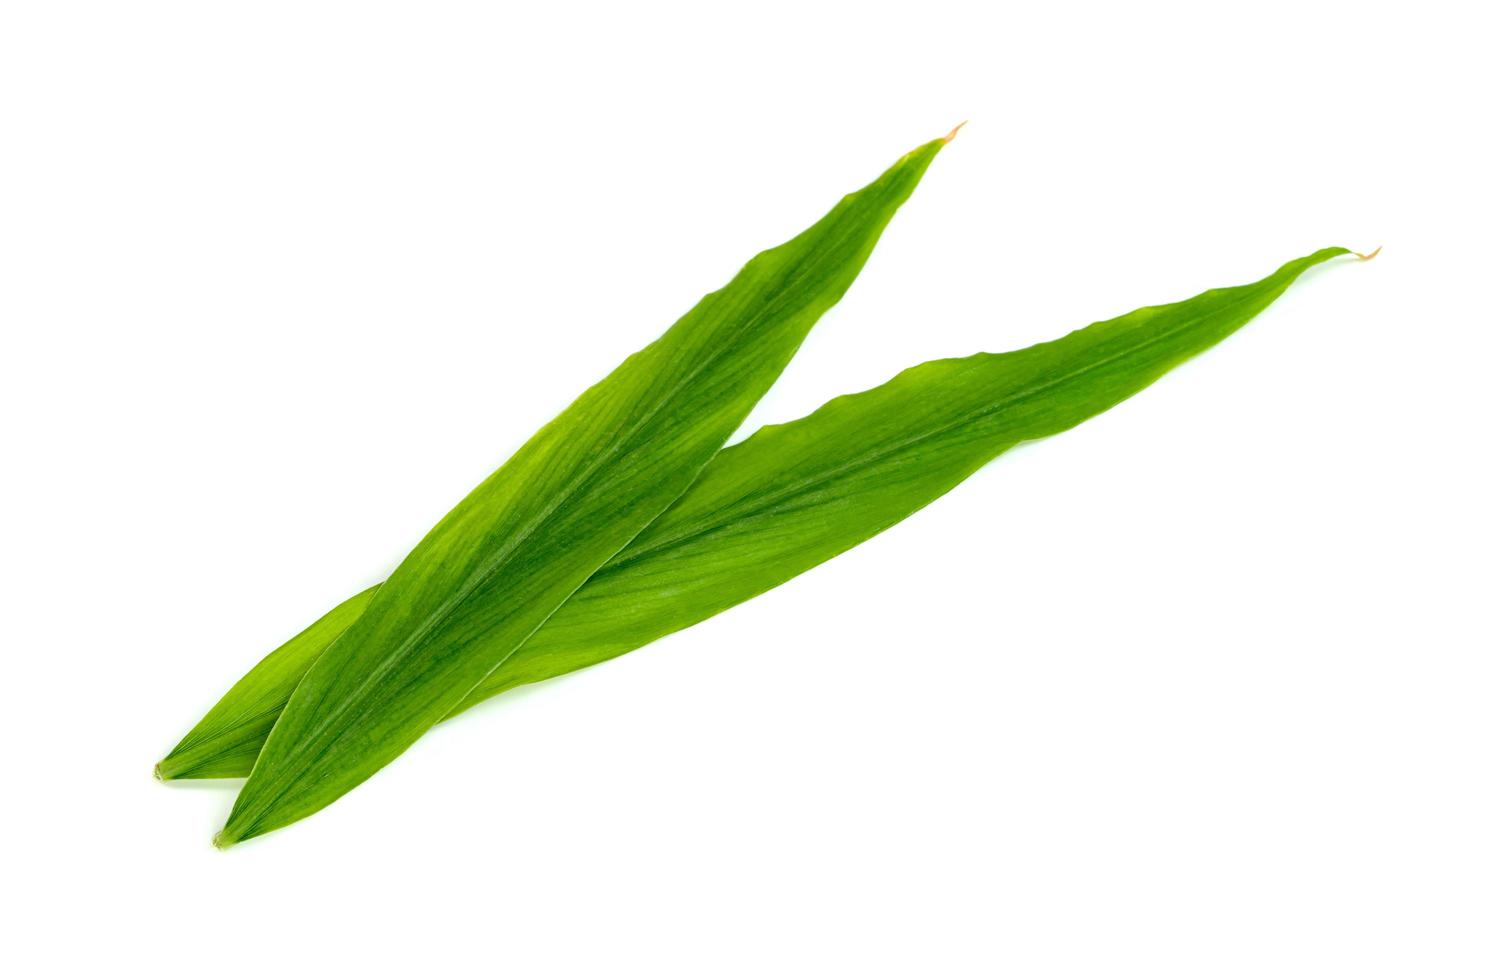 blad verse gember geïsoleerd op een witte achtergrond, groene bladeren patroon foto